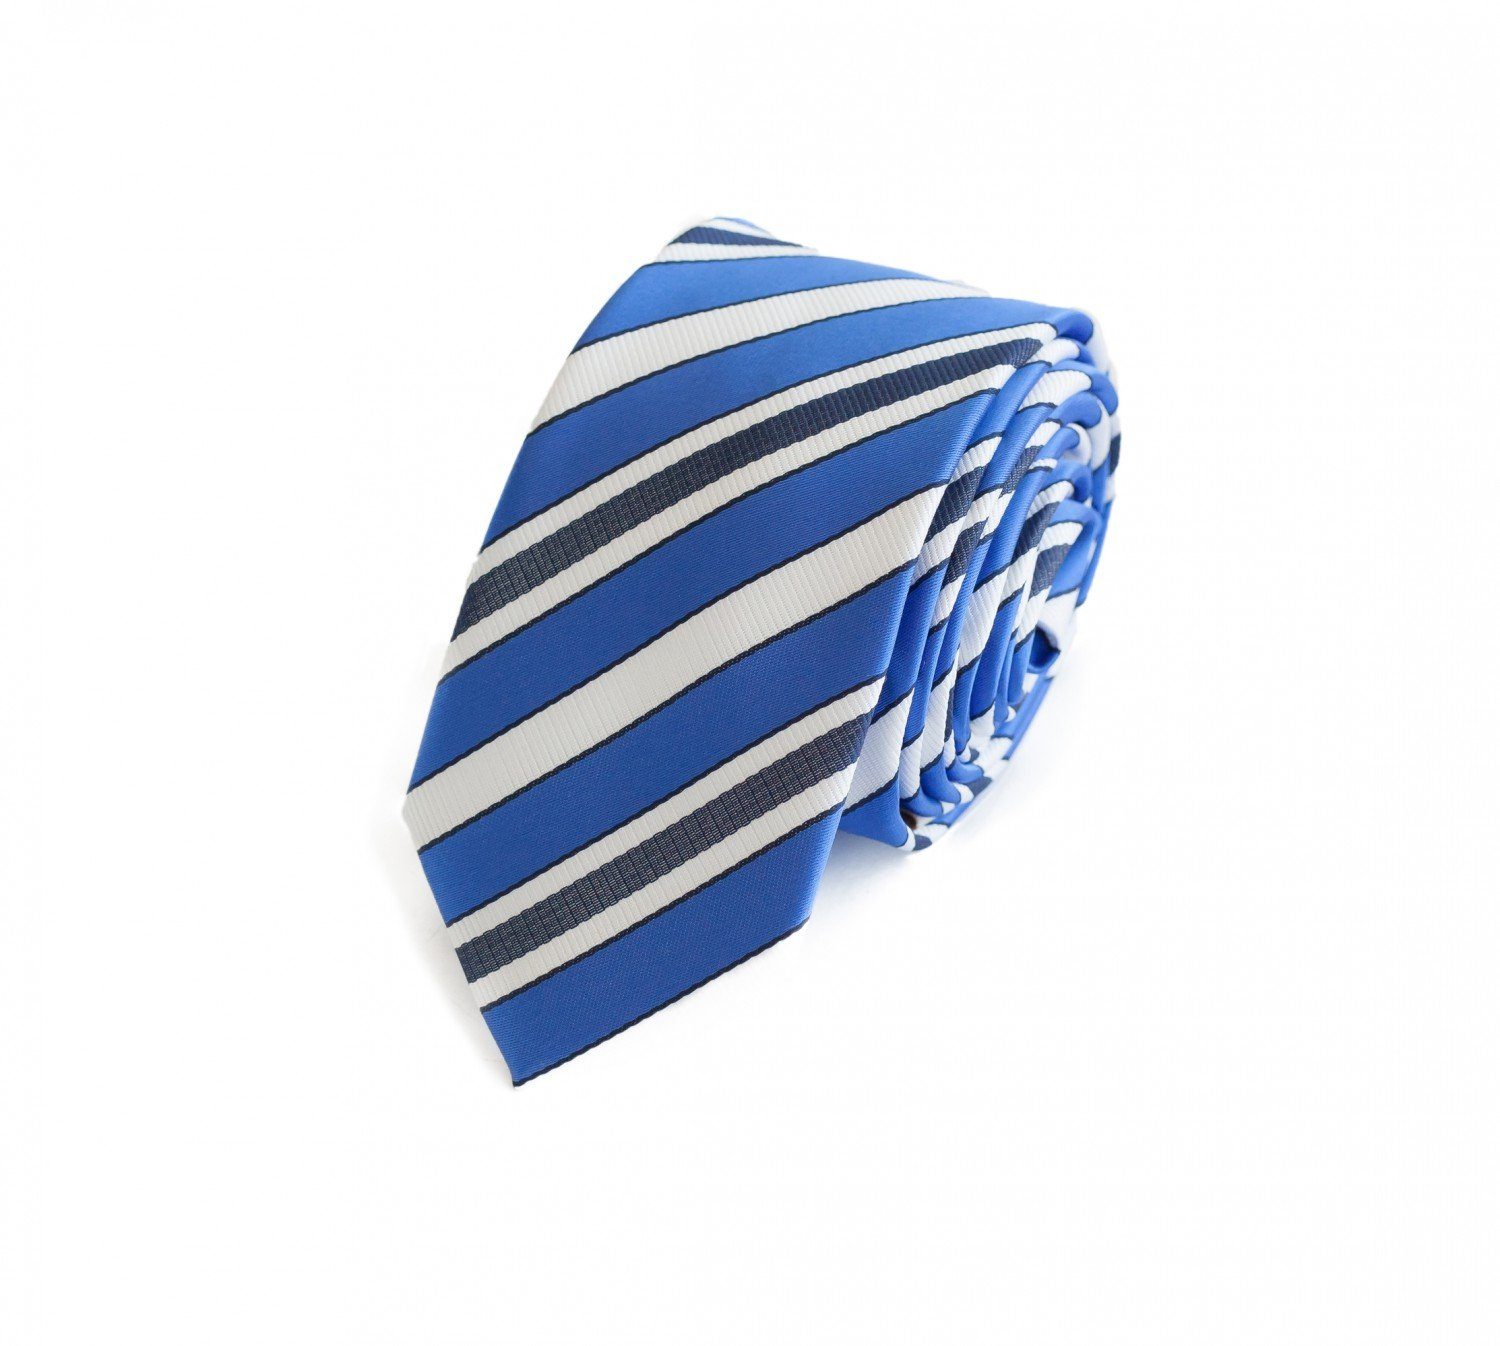 Blau/Weiß/Dunkelblau in Krawatten Weiße Herren Krawatte Schmal Gestreift) Fabio Blau (ohne Box, Breite Schlips - Gestreifte (6cm), Farini 6cm